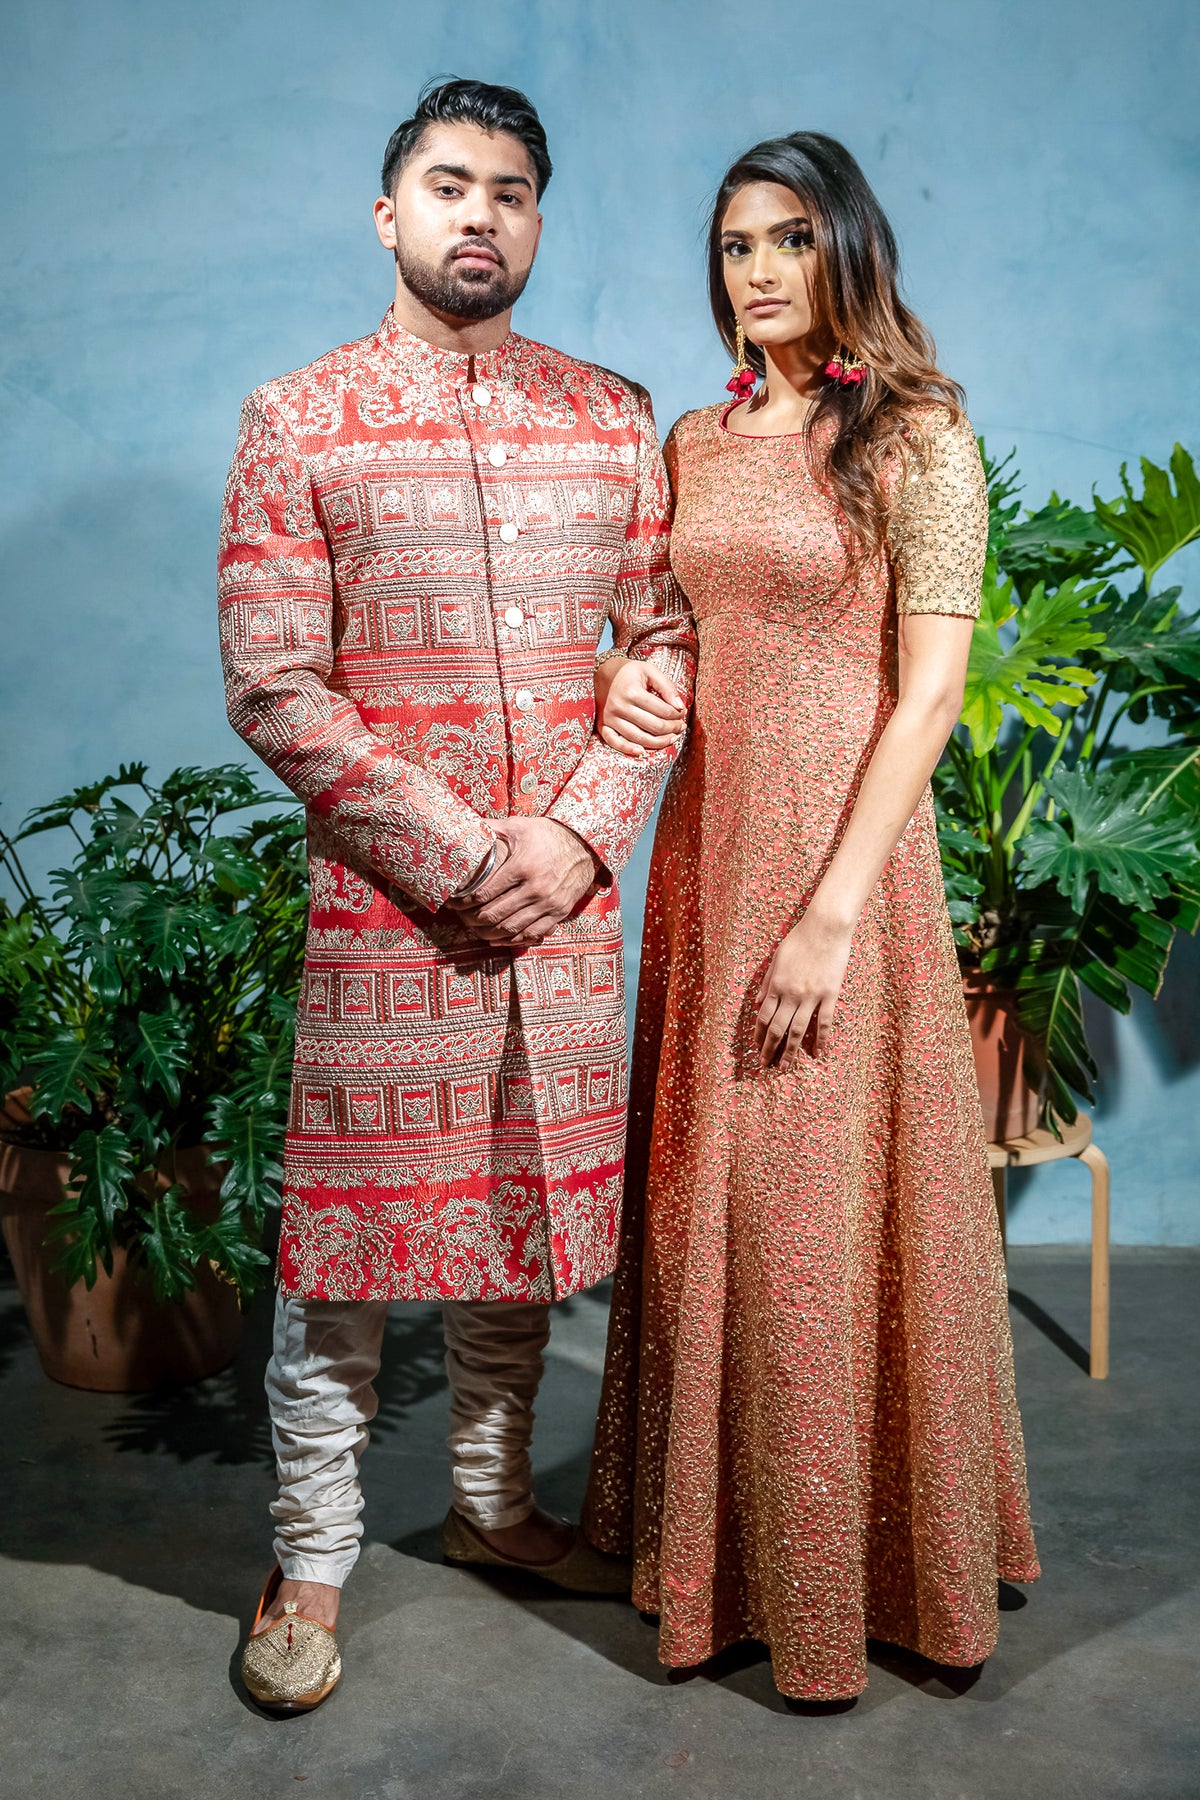 RANJA Pattern Sherwani Jacket - Front View - Harleen Kaur - Indian Menswear